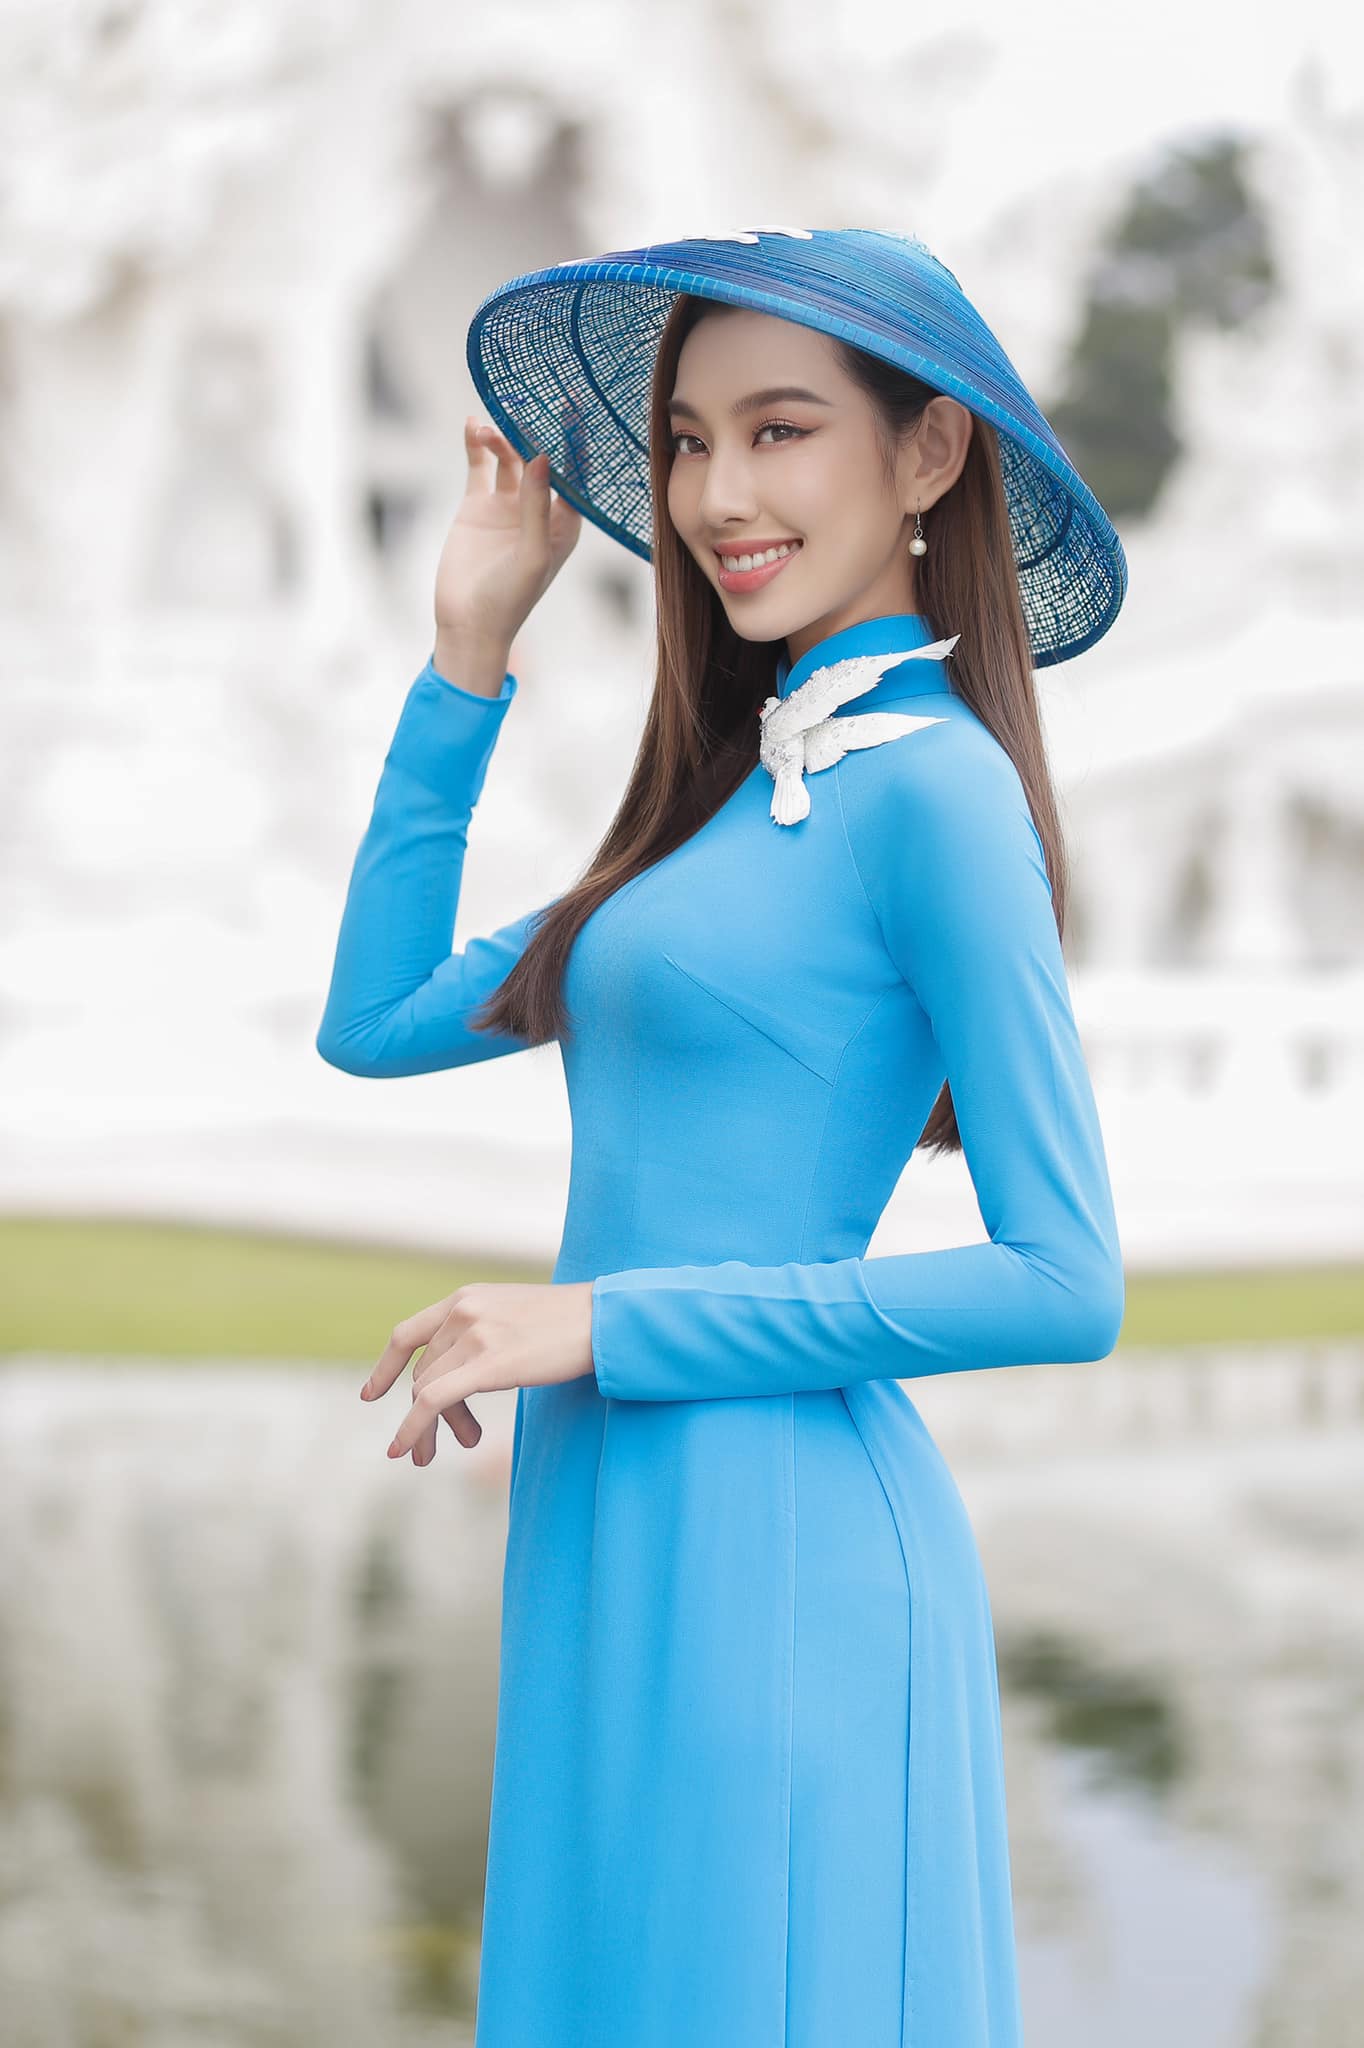 Nguyễn Thúc Thùy Tiên chia sẻ lý do ít mặc Áo dài, chỉ diện đồ truyền thống Thái Lan trong các hoạt động sau đăng quang